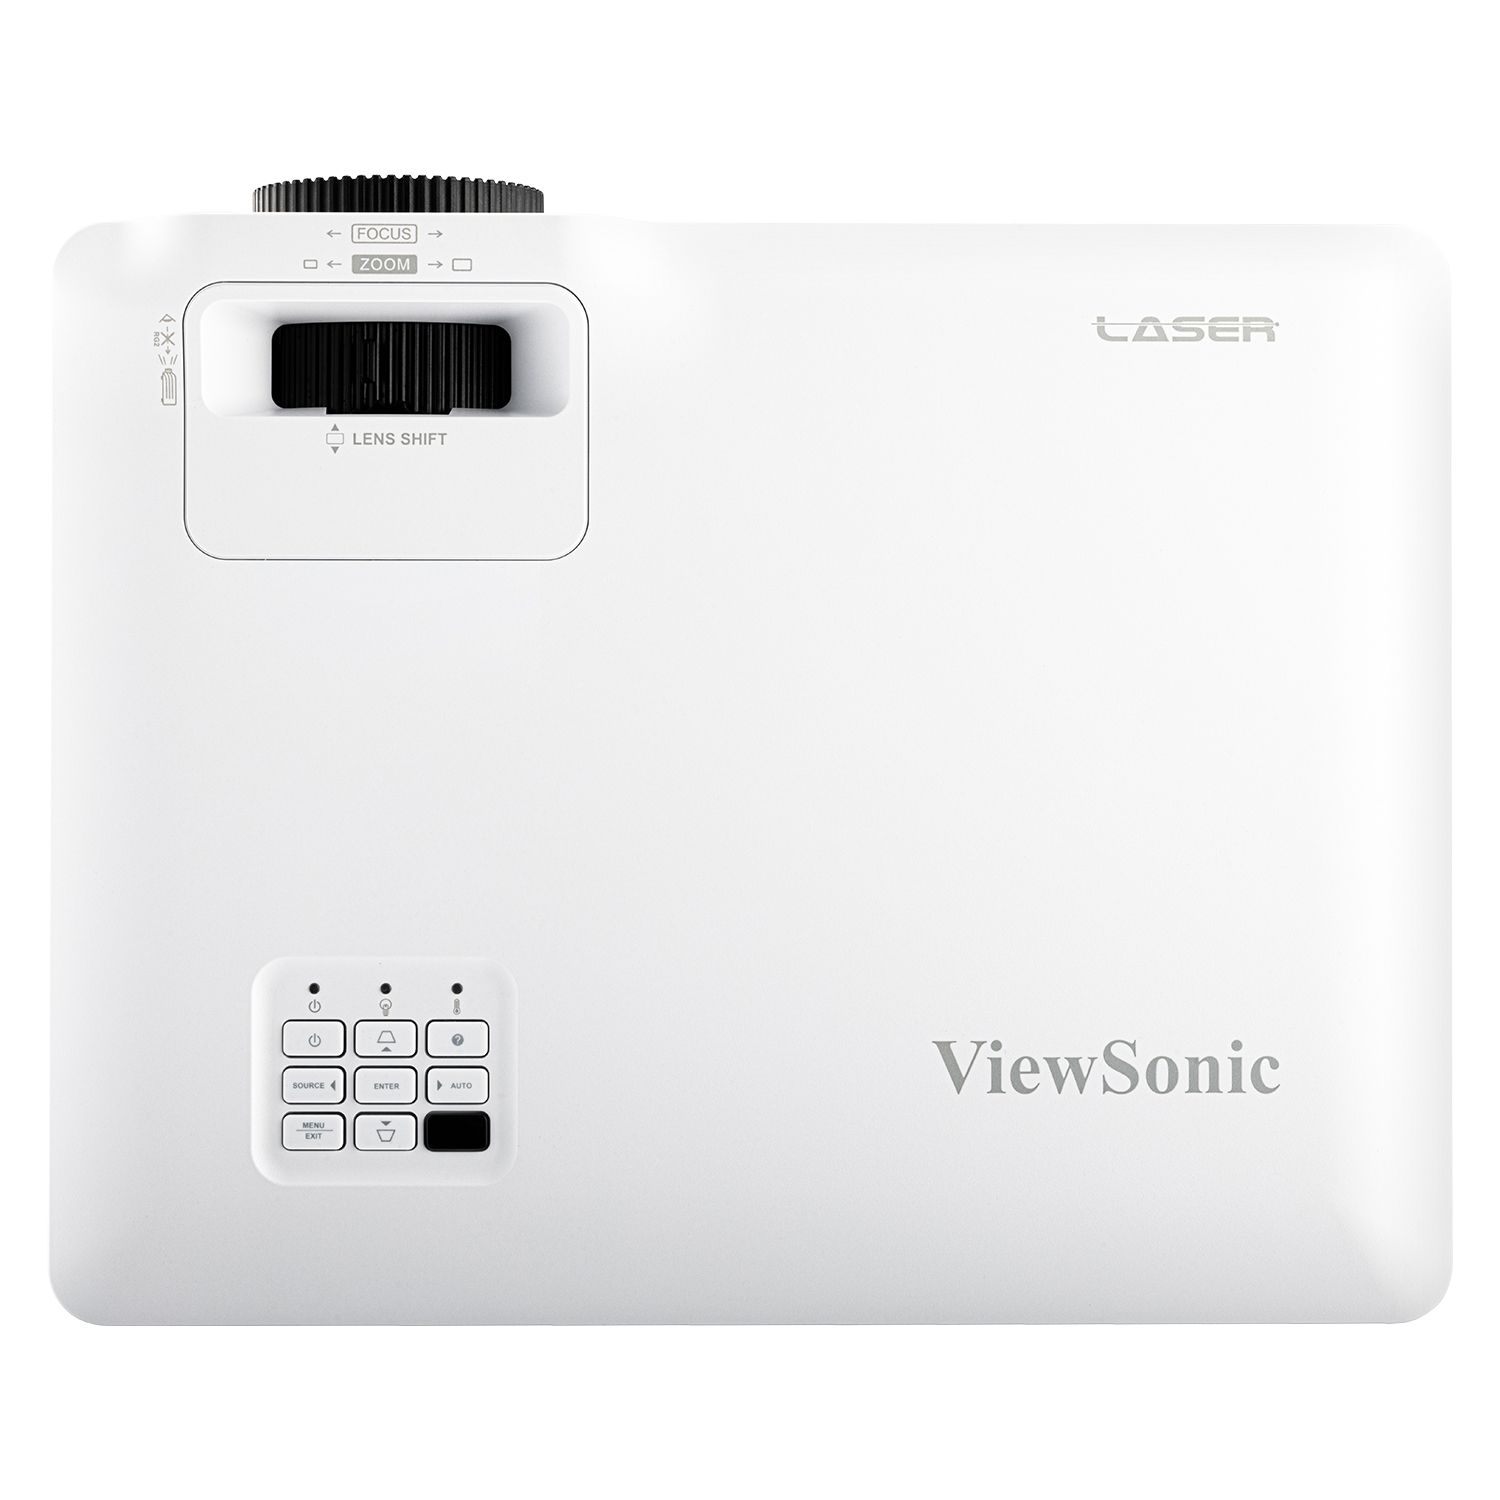 ViewSonic LS751HD - Full HD - 5000 Ansi - Laser Projektor - Weiss